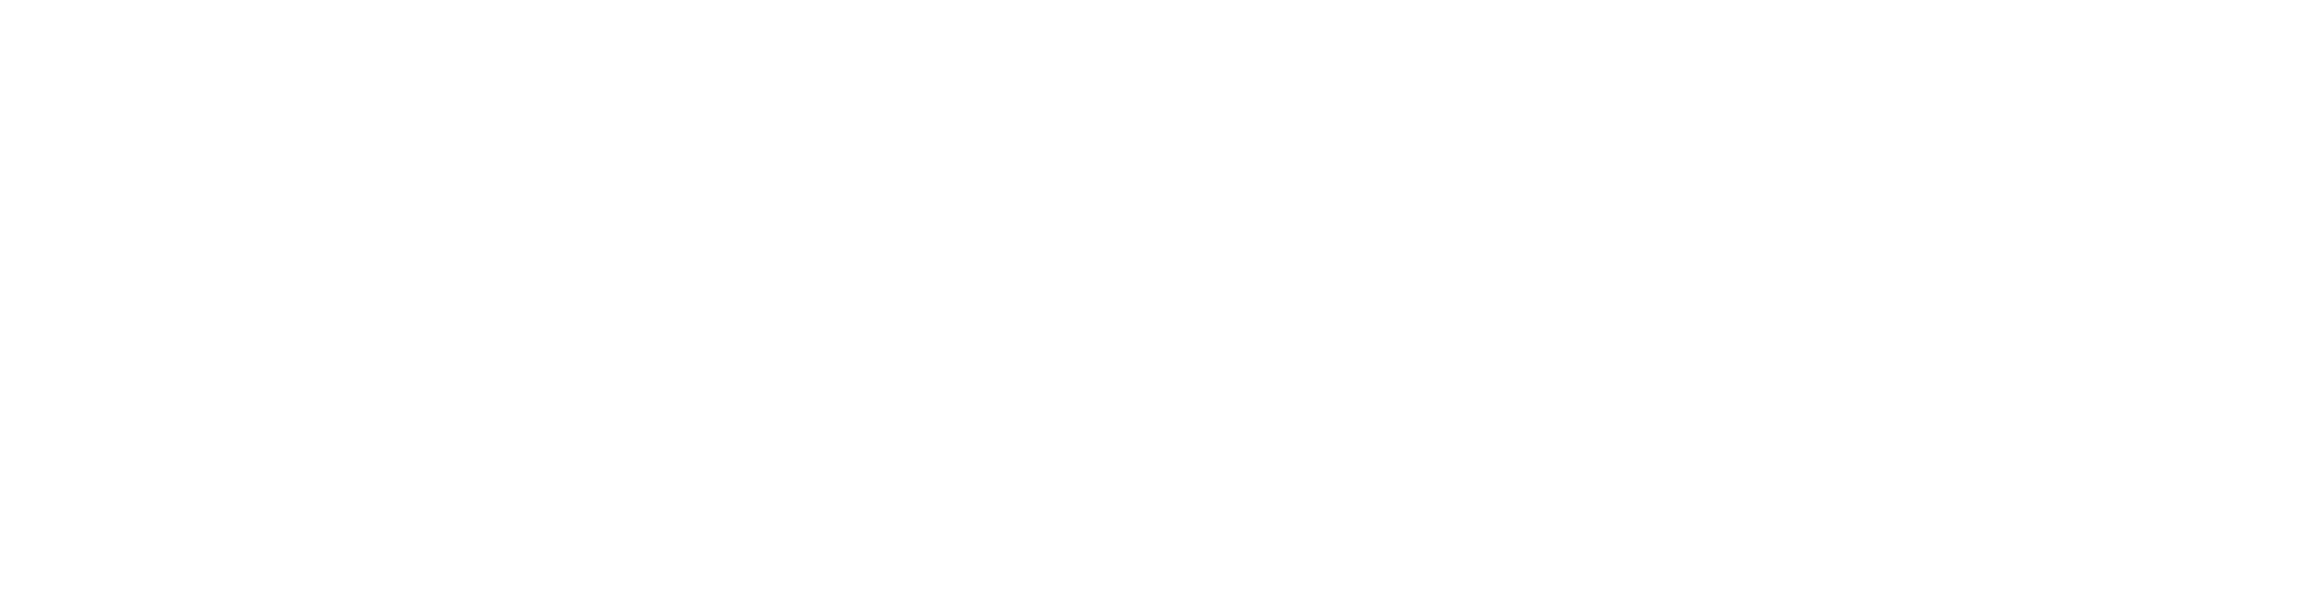 Branding-Client-List